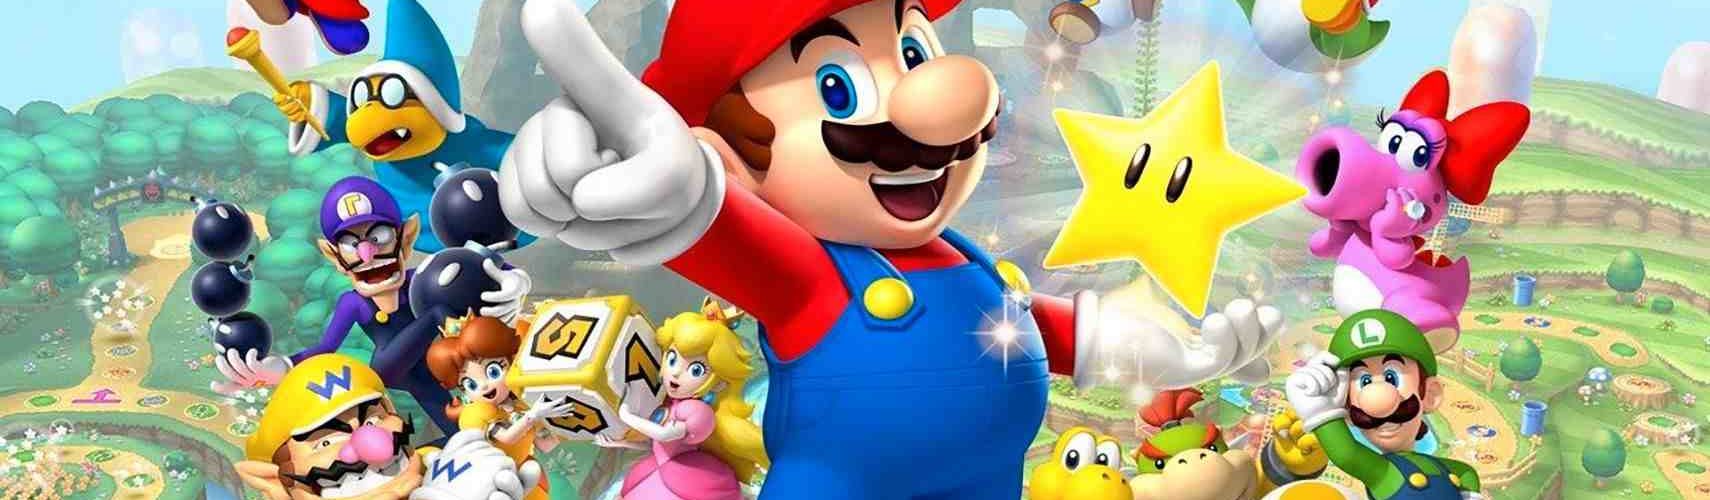 Une fuite de nouveaux jeux Mario donne de l'espoir aux fans de Nintendo GameCube